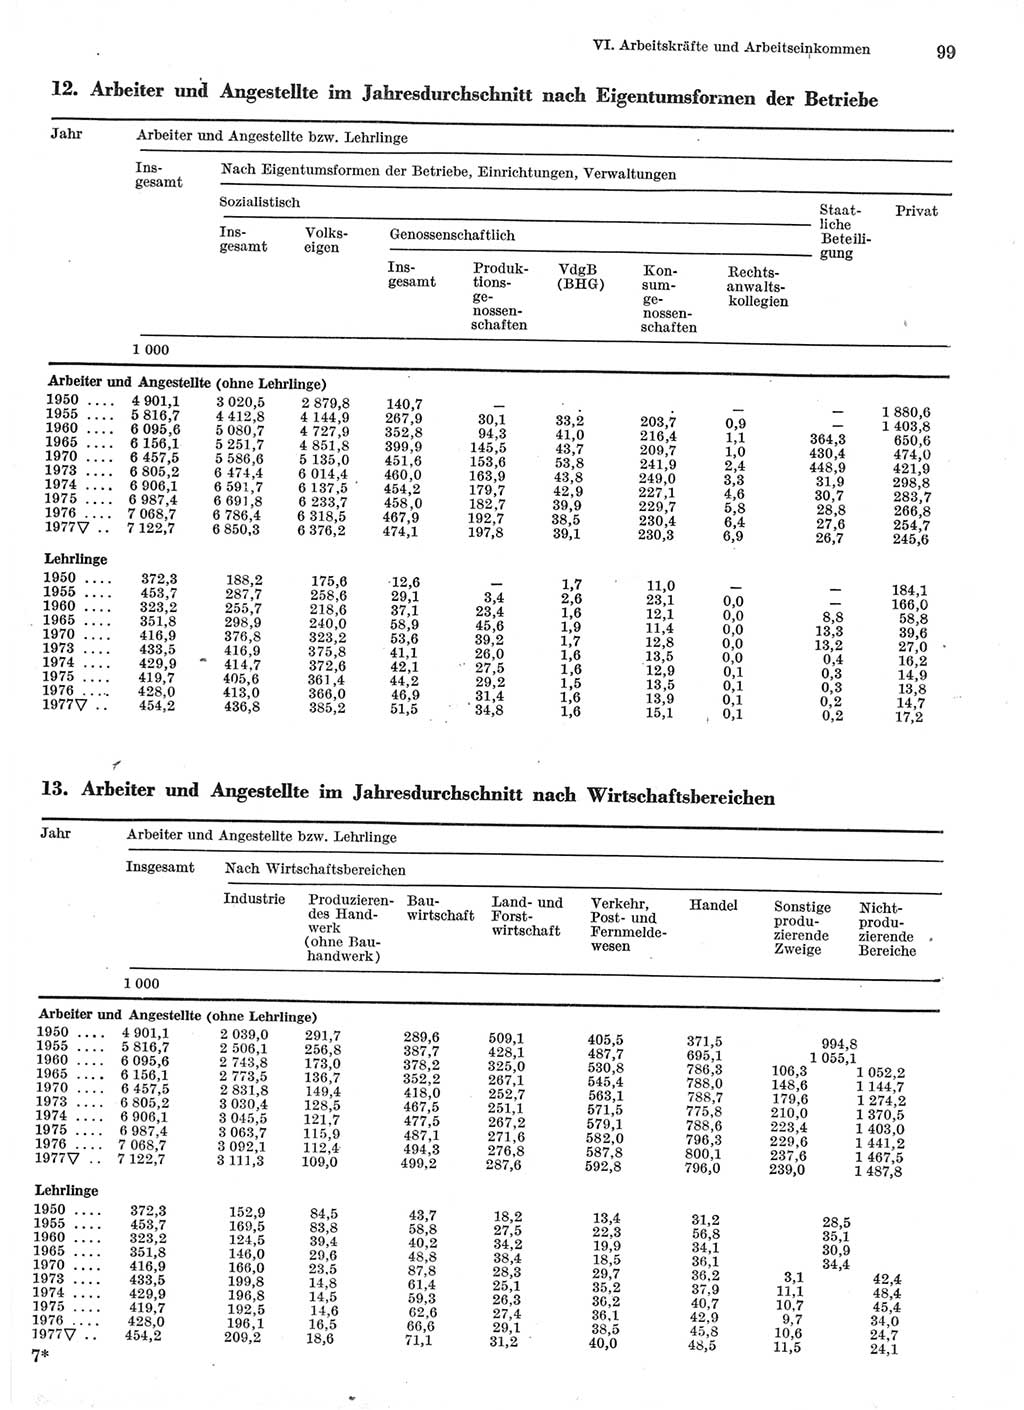 Statistisches Jahrbuch der Deutschen Demokratischen Republik (DDR) 1978, Seite 99 (Stat. Jb. DDR 1978, S. 99)